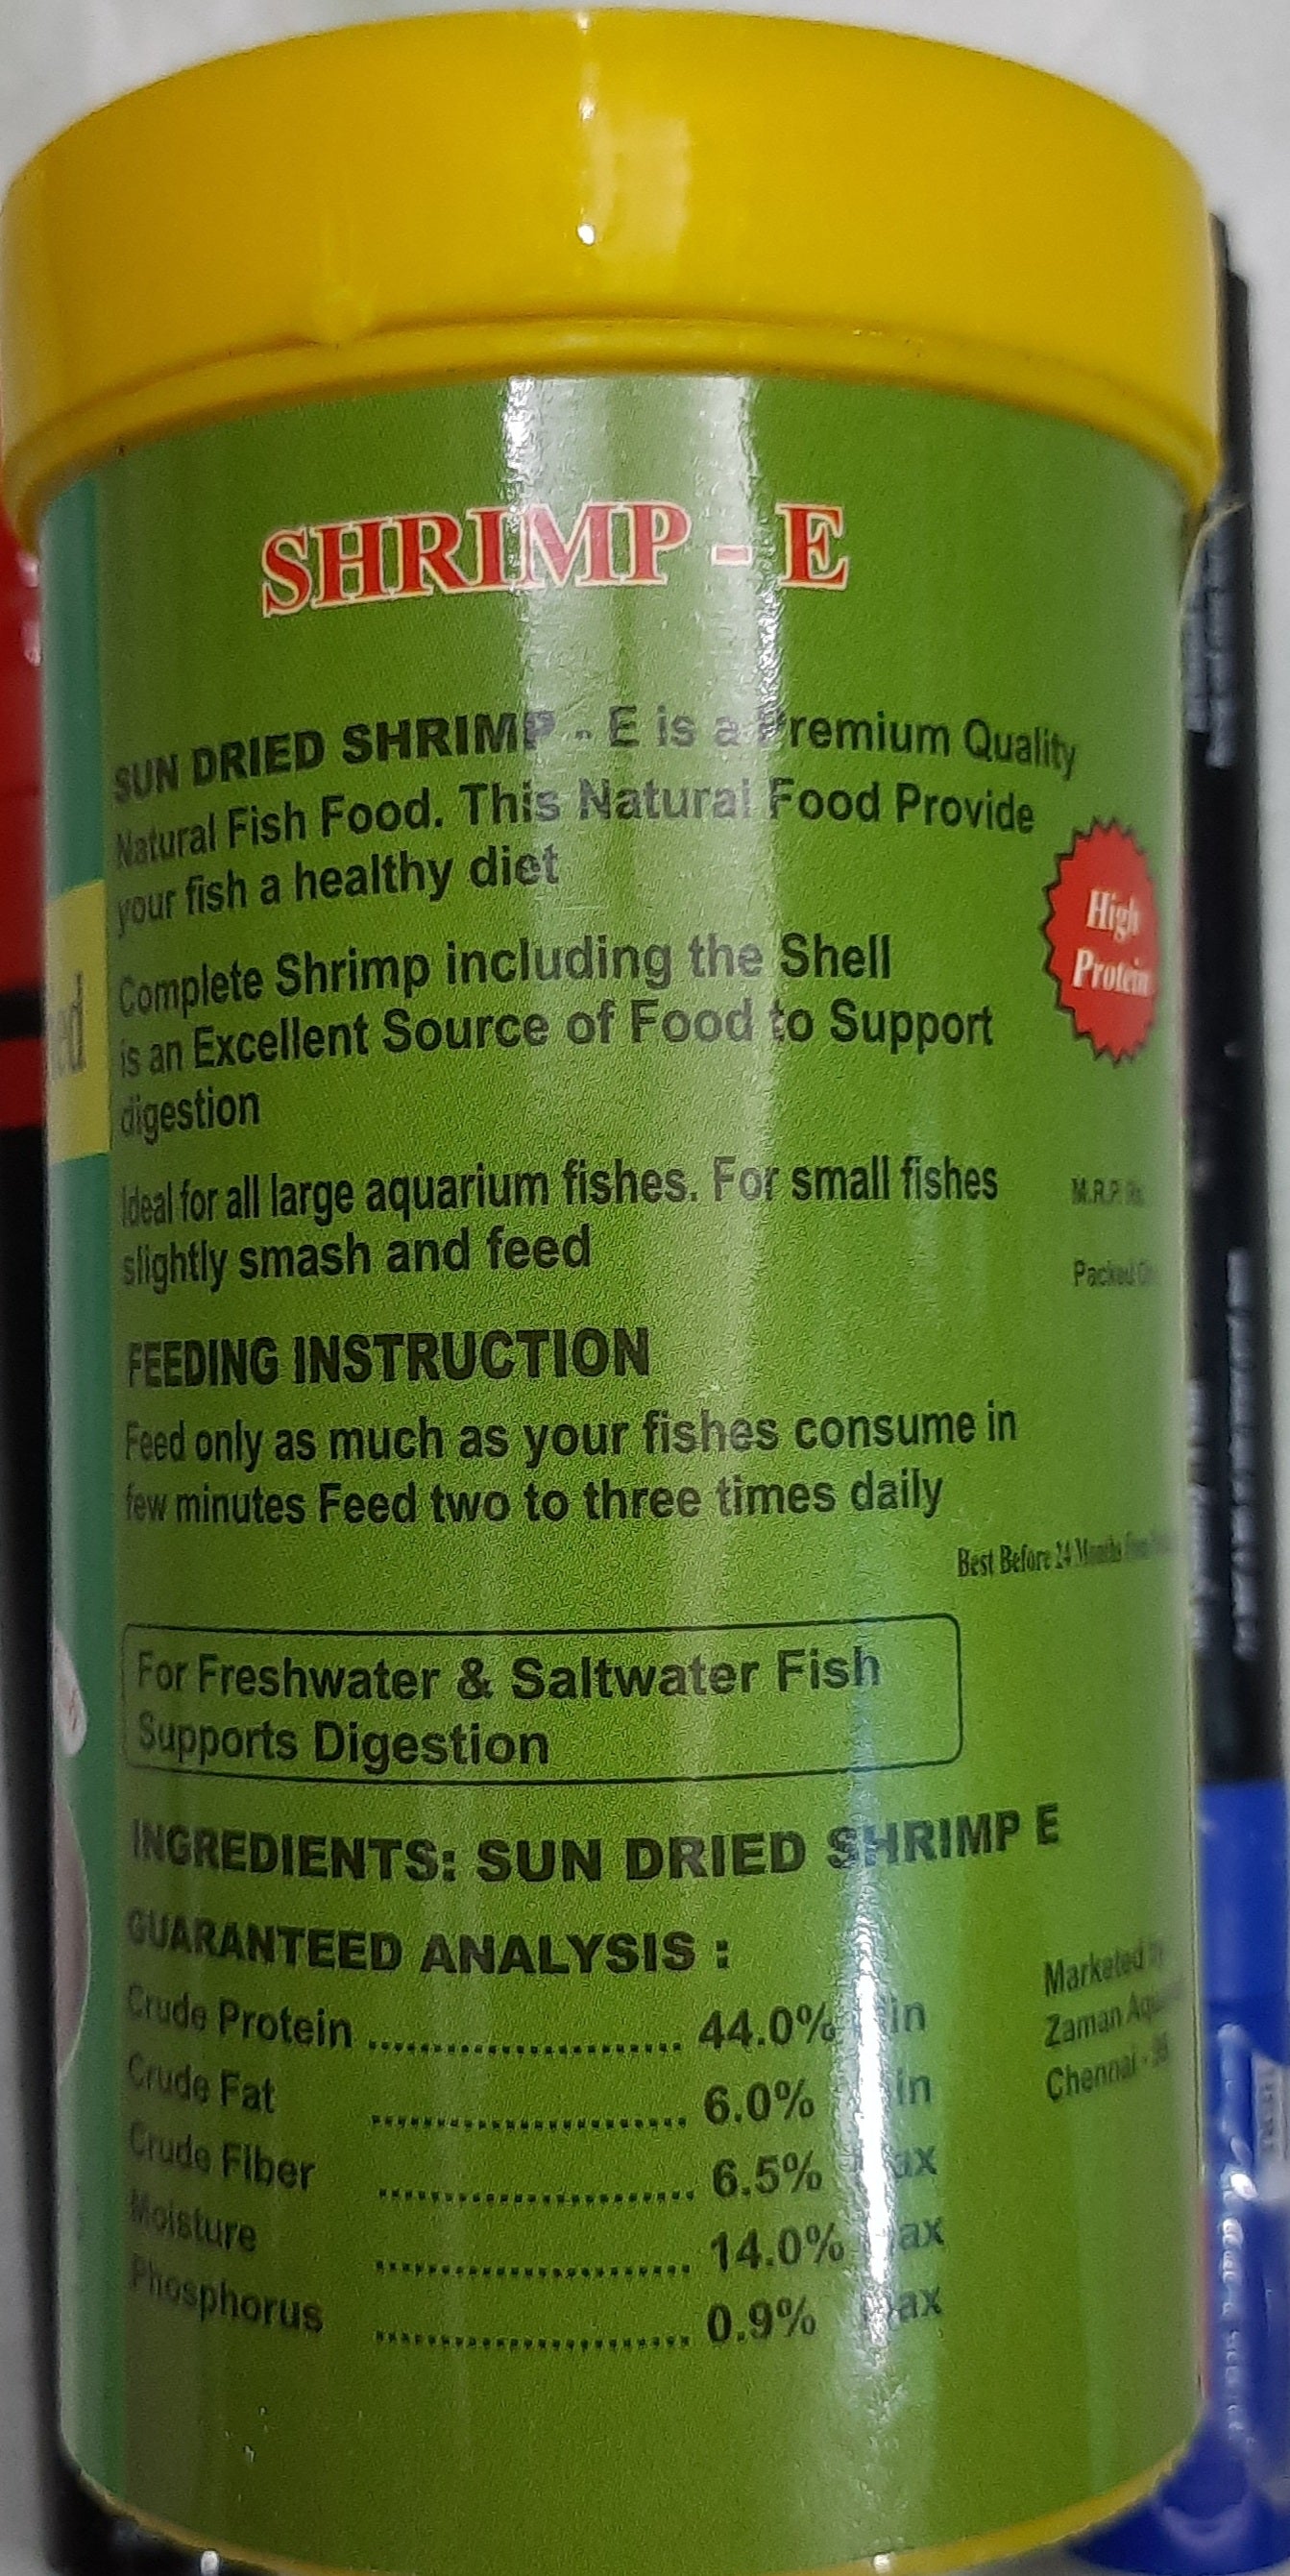 Freeze Dried Shrimp 40 Grams For Arowna - HANA Brand